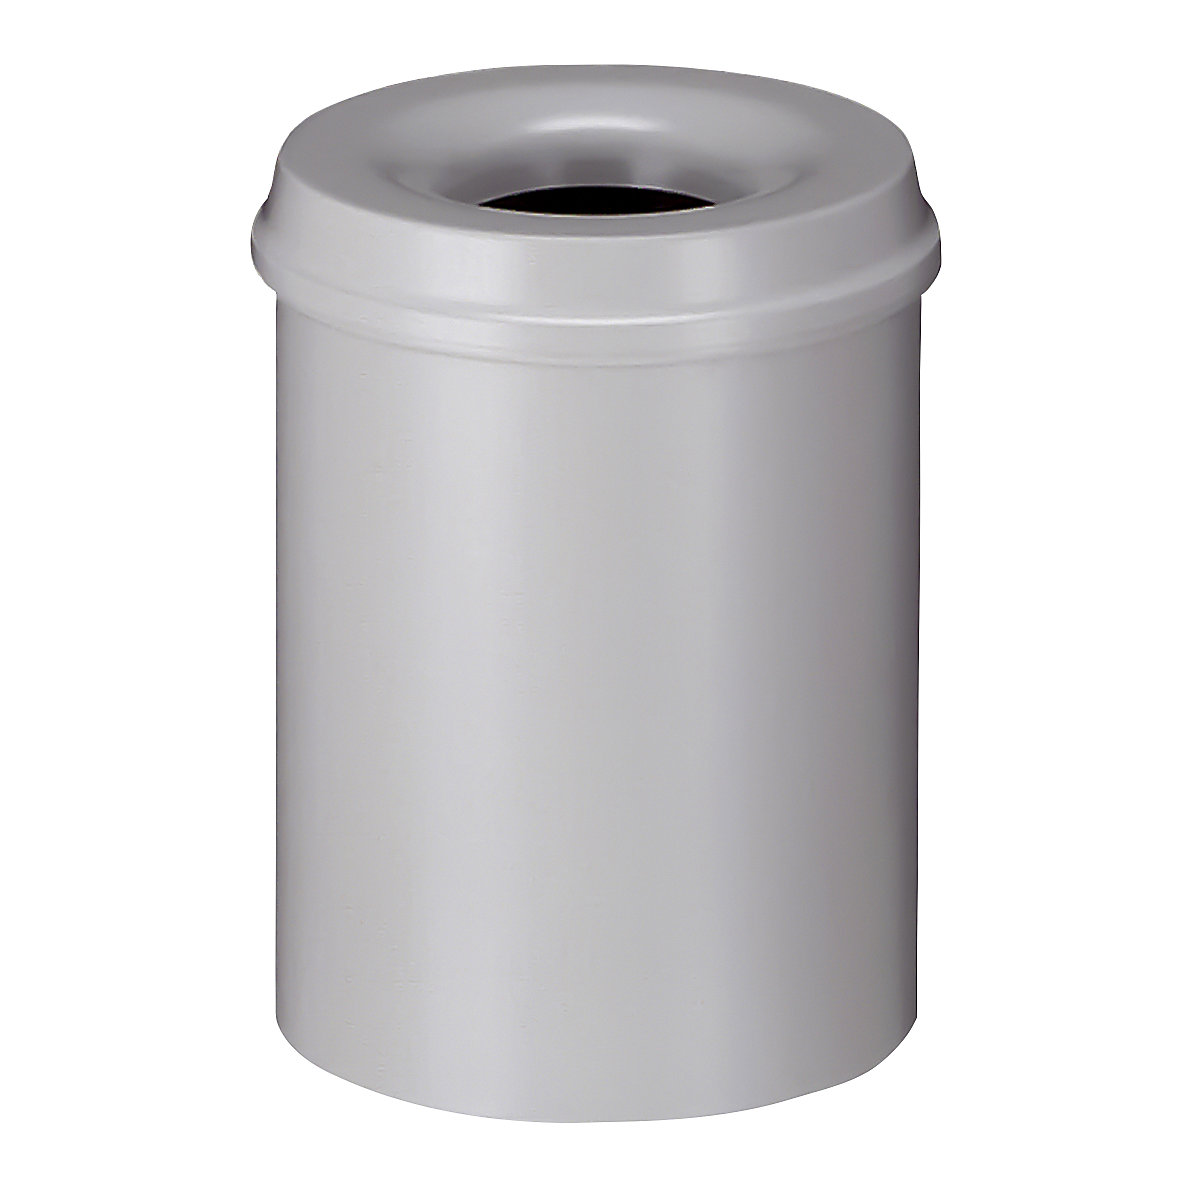 Sigurnosna kanta za papir, čelik, samogasiva, volumen 15 l, VxØ 360 x 255 mm, korpus u sivoj boji / vrh za gašenje u sivoj boji-6